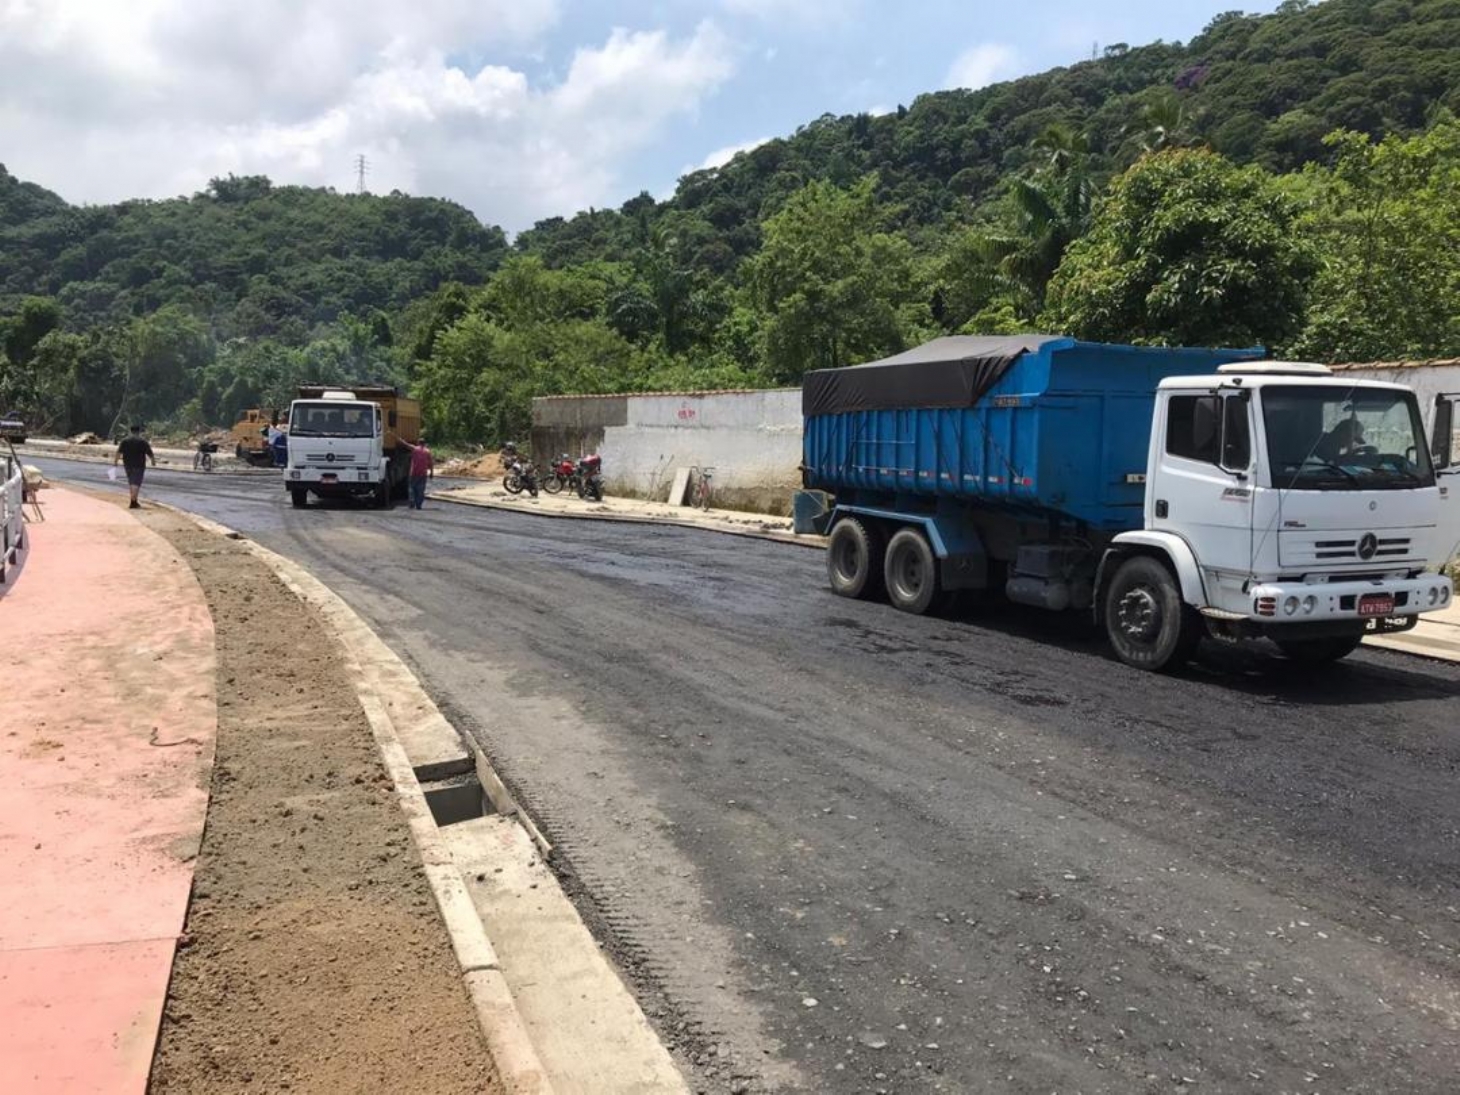 Nova pista em avenida de Santos recebe 400 toneladas de asfalto | Jornal da Orla